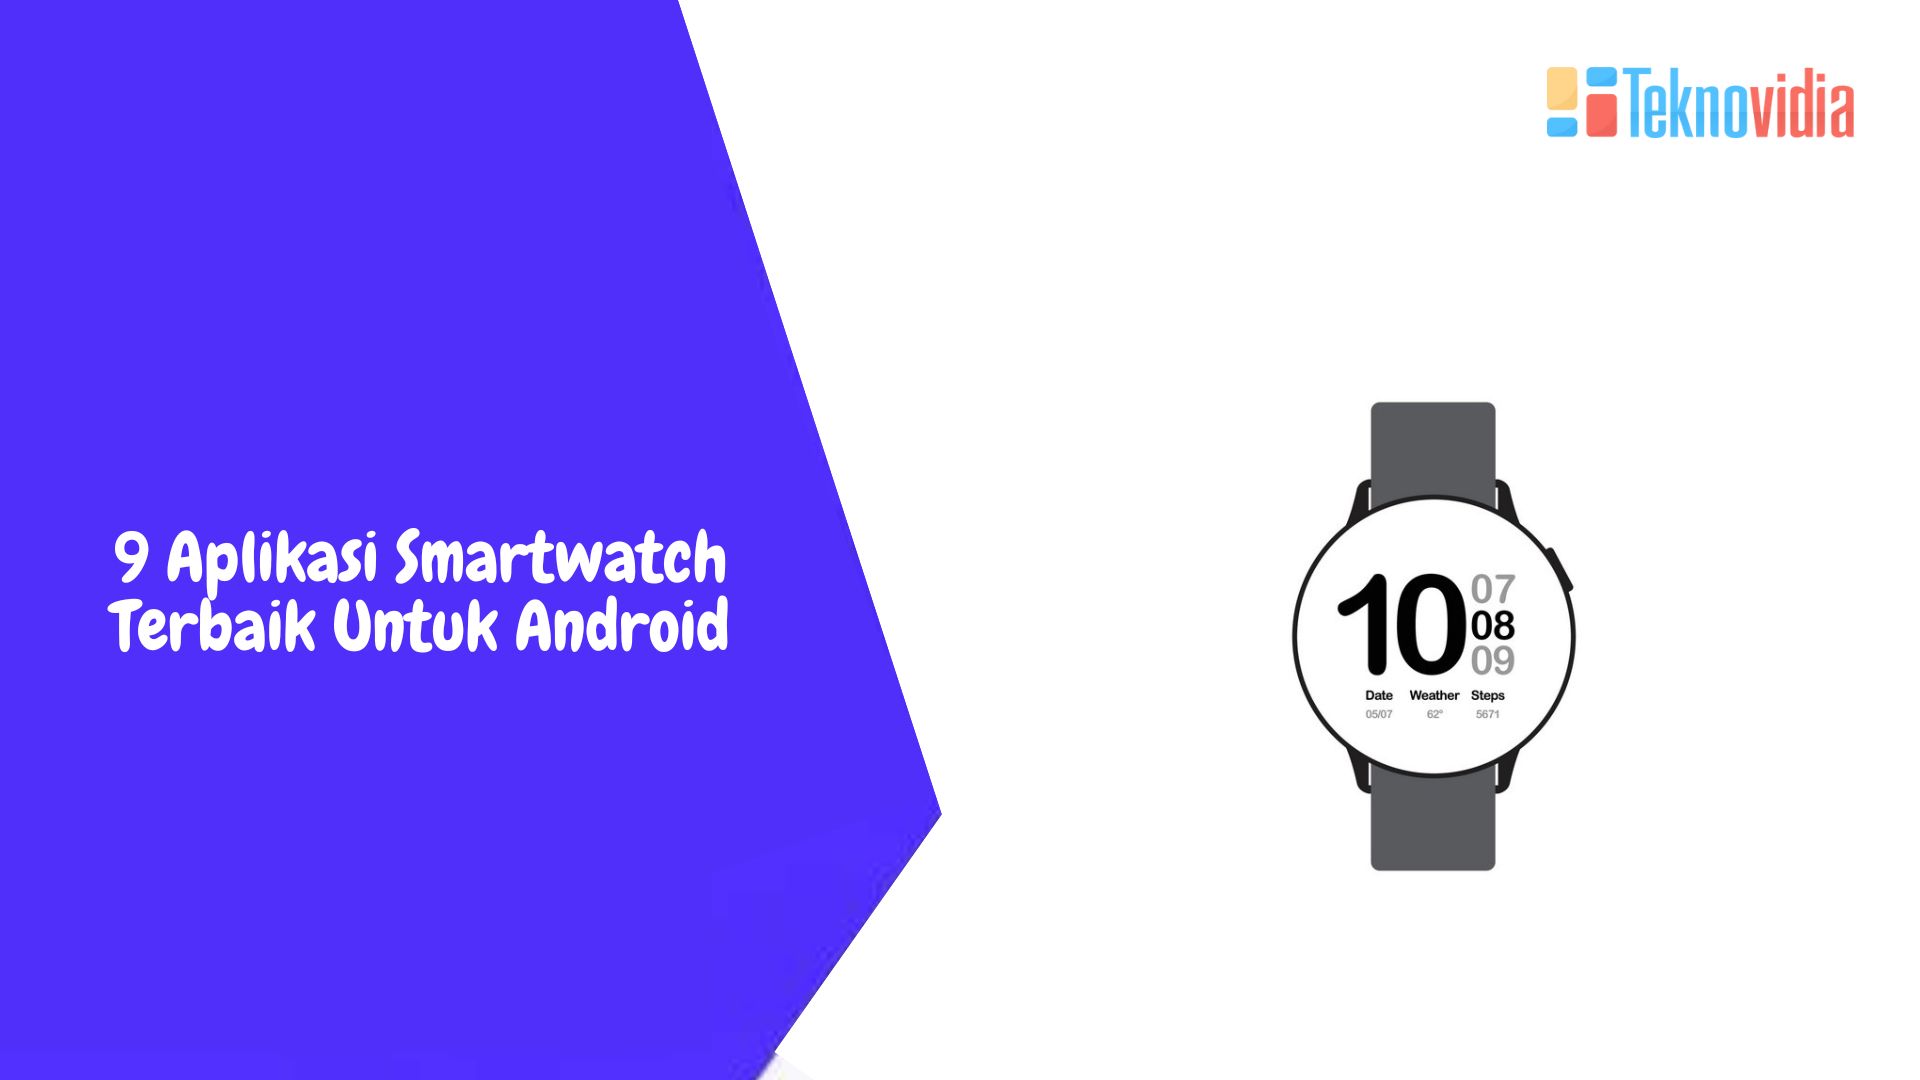 9 Aplikasi Smartwatch Terbaik Untuk Android